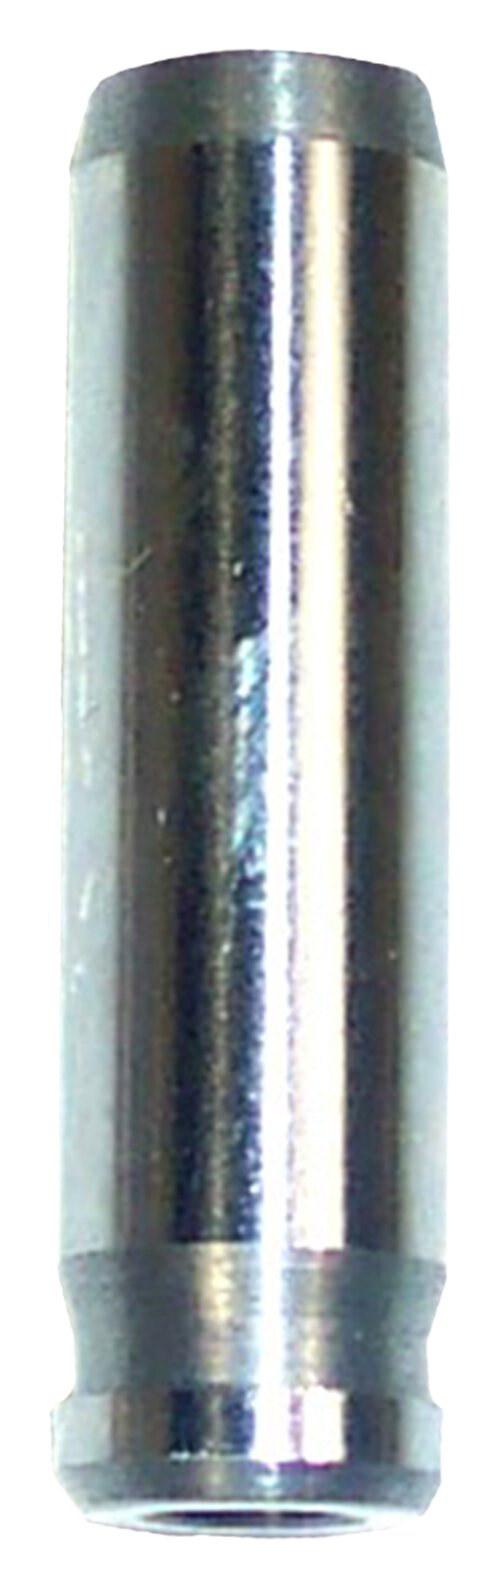 dnj valve guide 1987-1998 toyota tercel,tercel,tercel l4 1.5l vg903